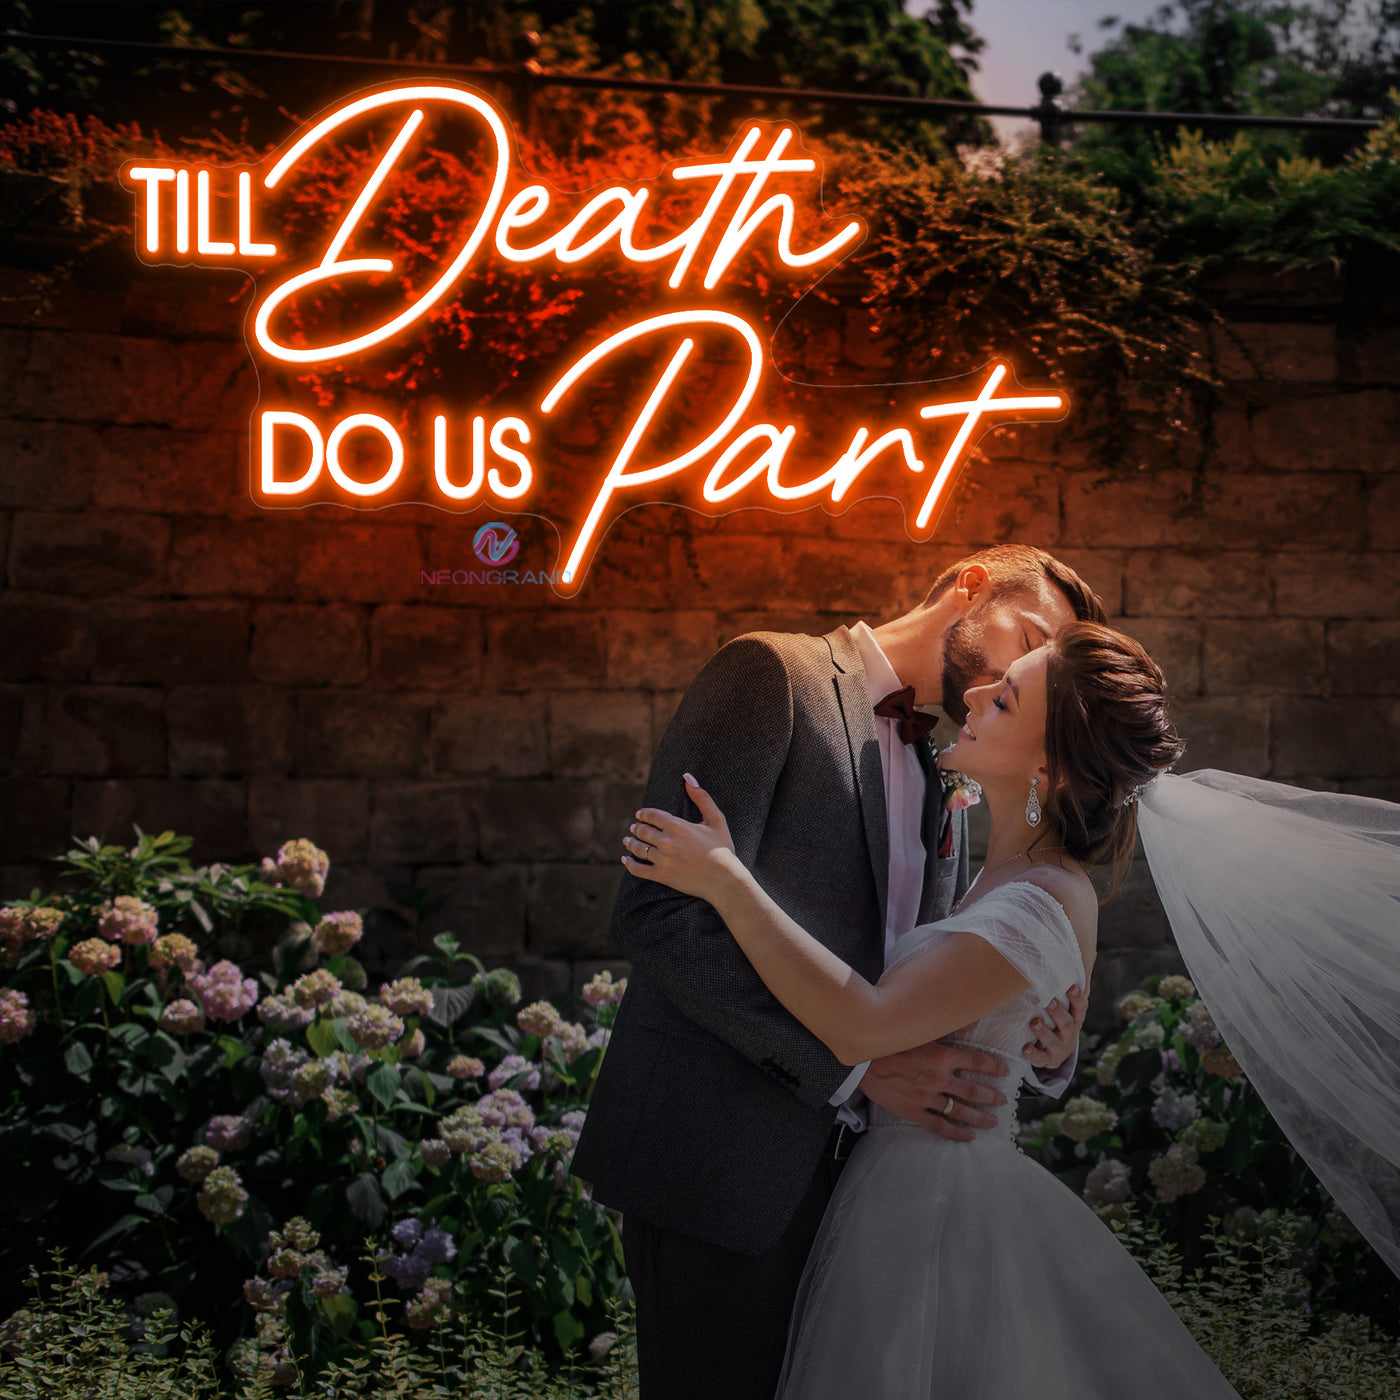 Til Death Do Us Part Neon Sign Wedding Led Light dark orange